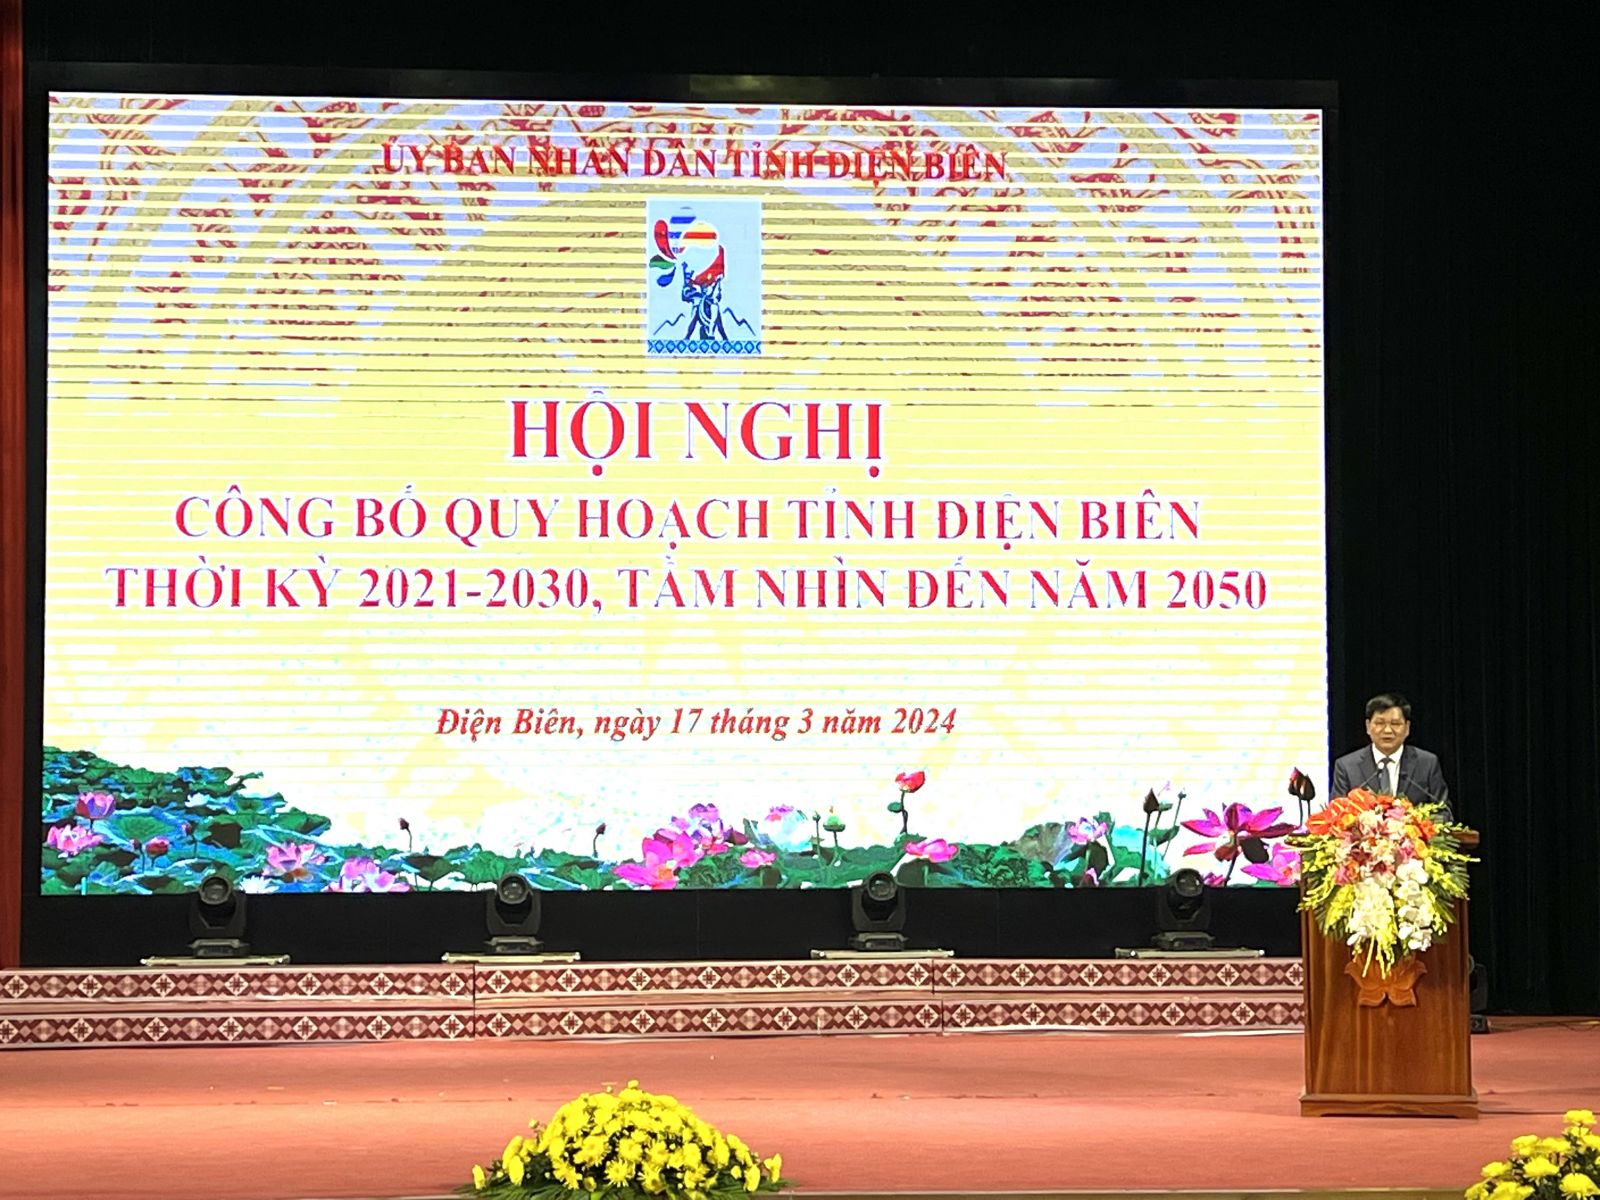 Chủ tịch UBND tỉnh Điện Biên Lê Thành Đô phát biểu tại Hội nghị.